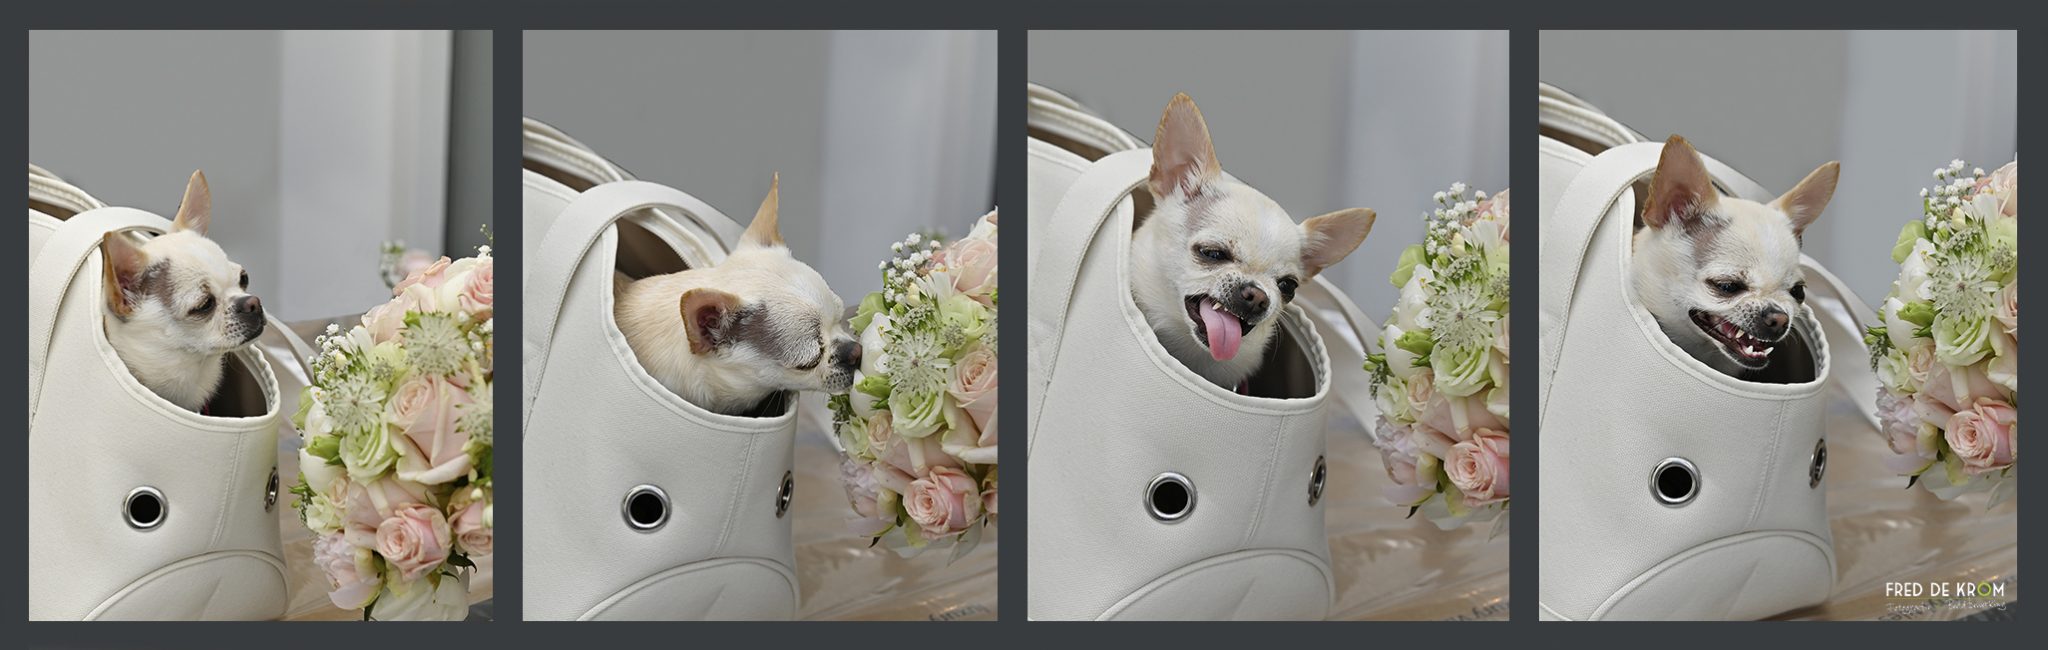 Hondje in tas, ruikend aan bruidsboeket tijdens bruidsreportage Veldhoven.